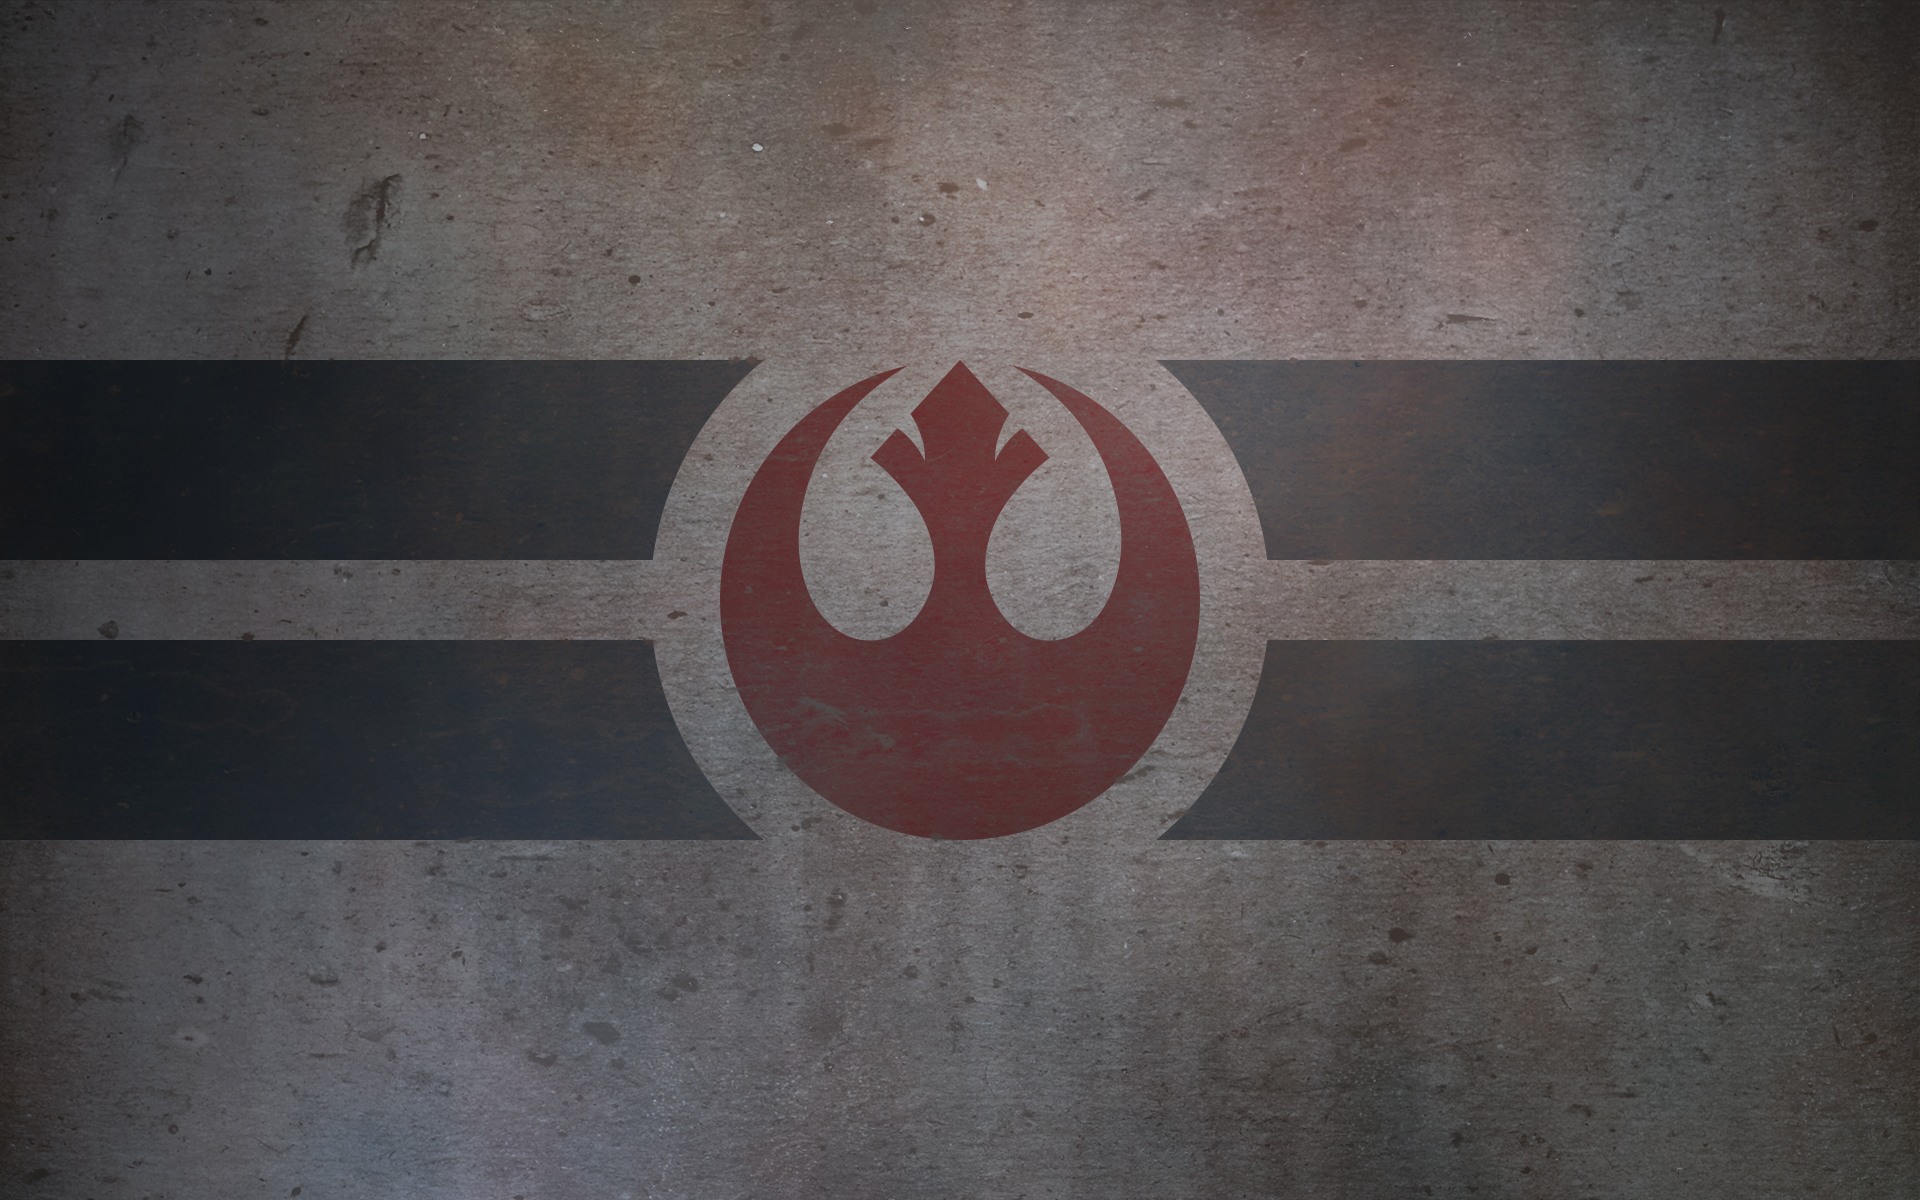 49 Star Wars Rebels Wallpaper  WallpaperSafari